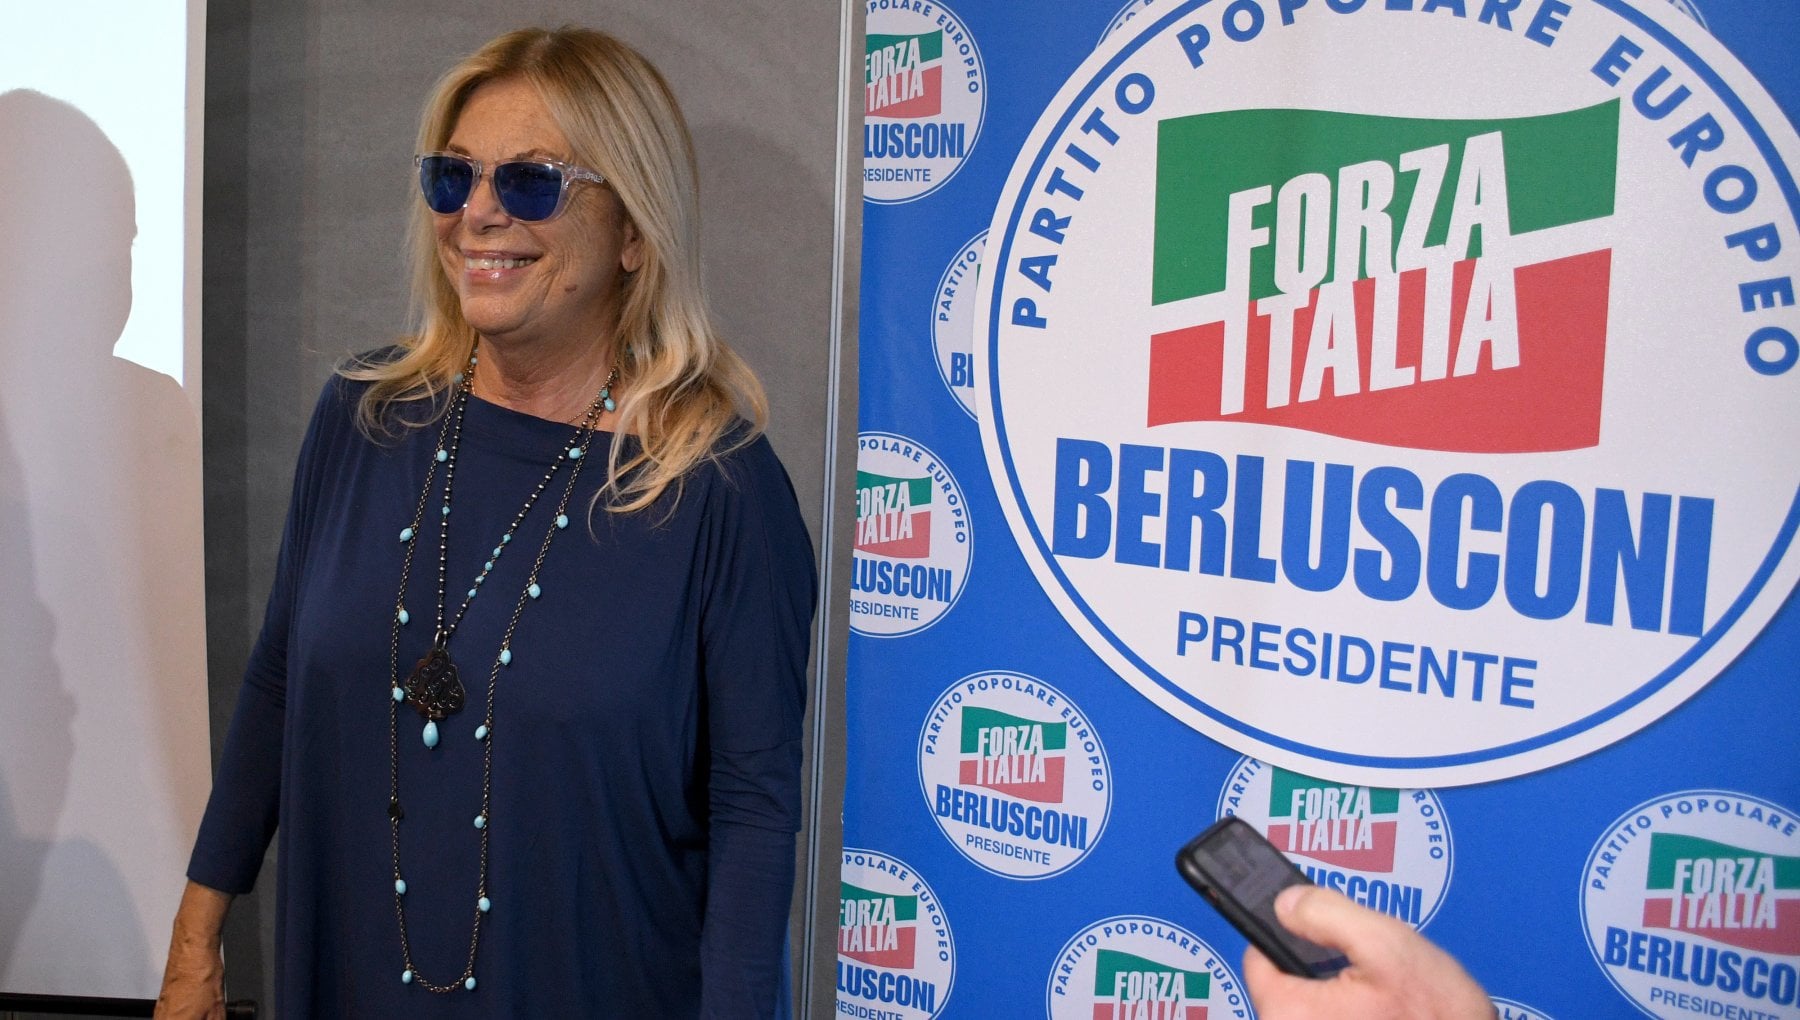 Rita Dalla Chiesa calunnia i giornalisti di Report su Berlusconi: "Stile mafioso, sono Tele Baiardo"